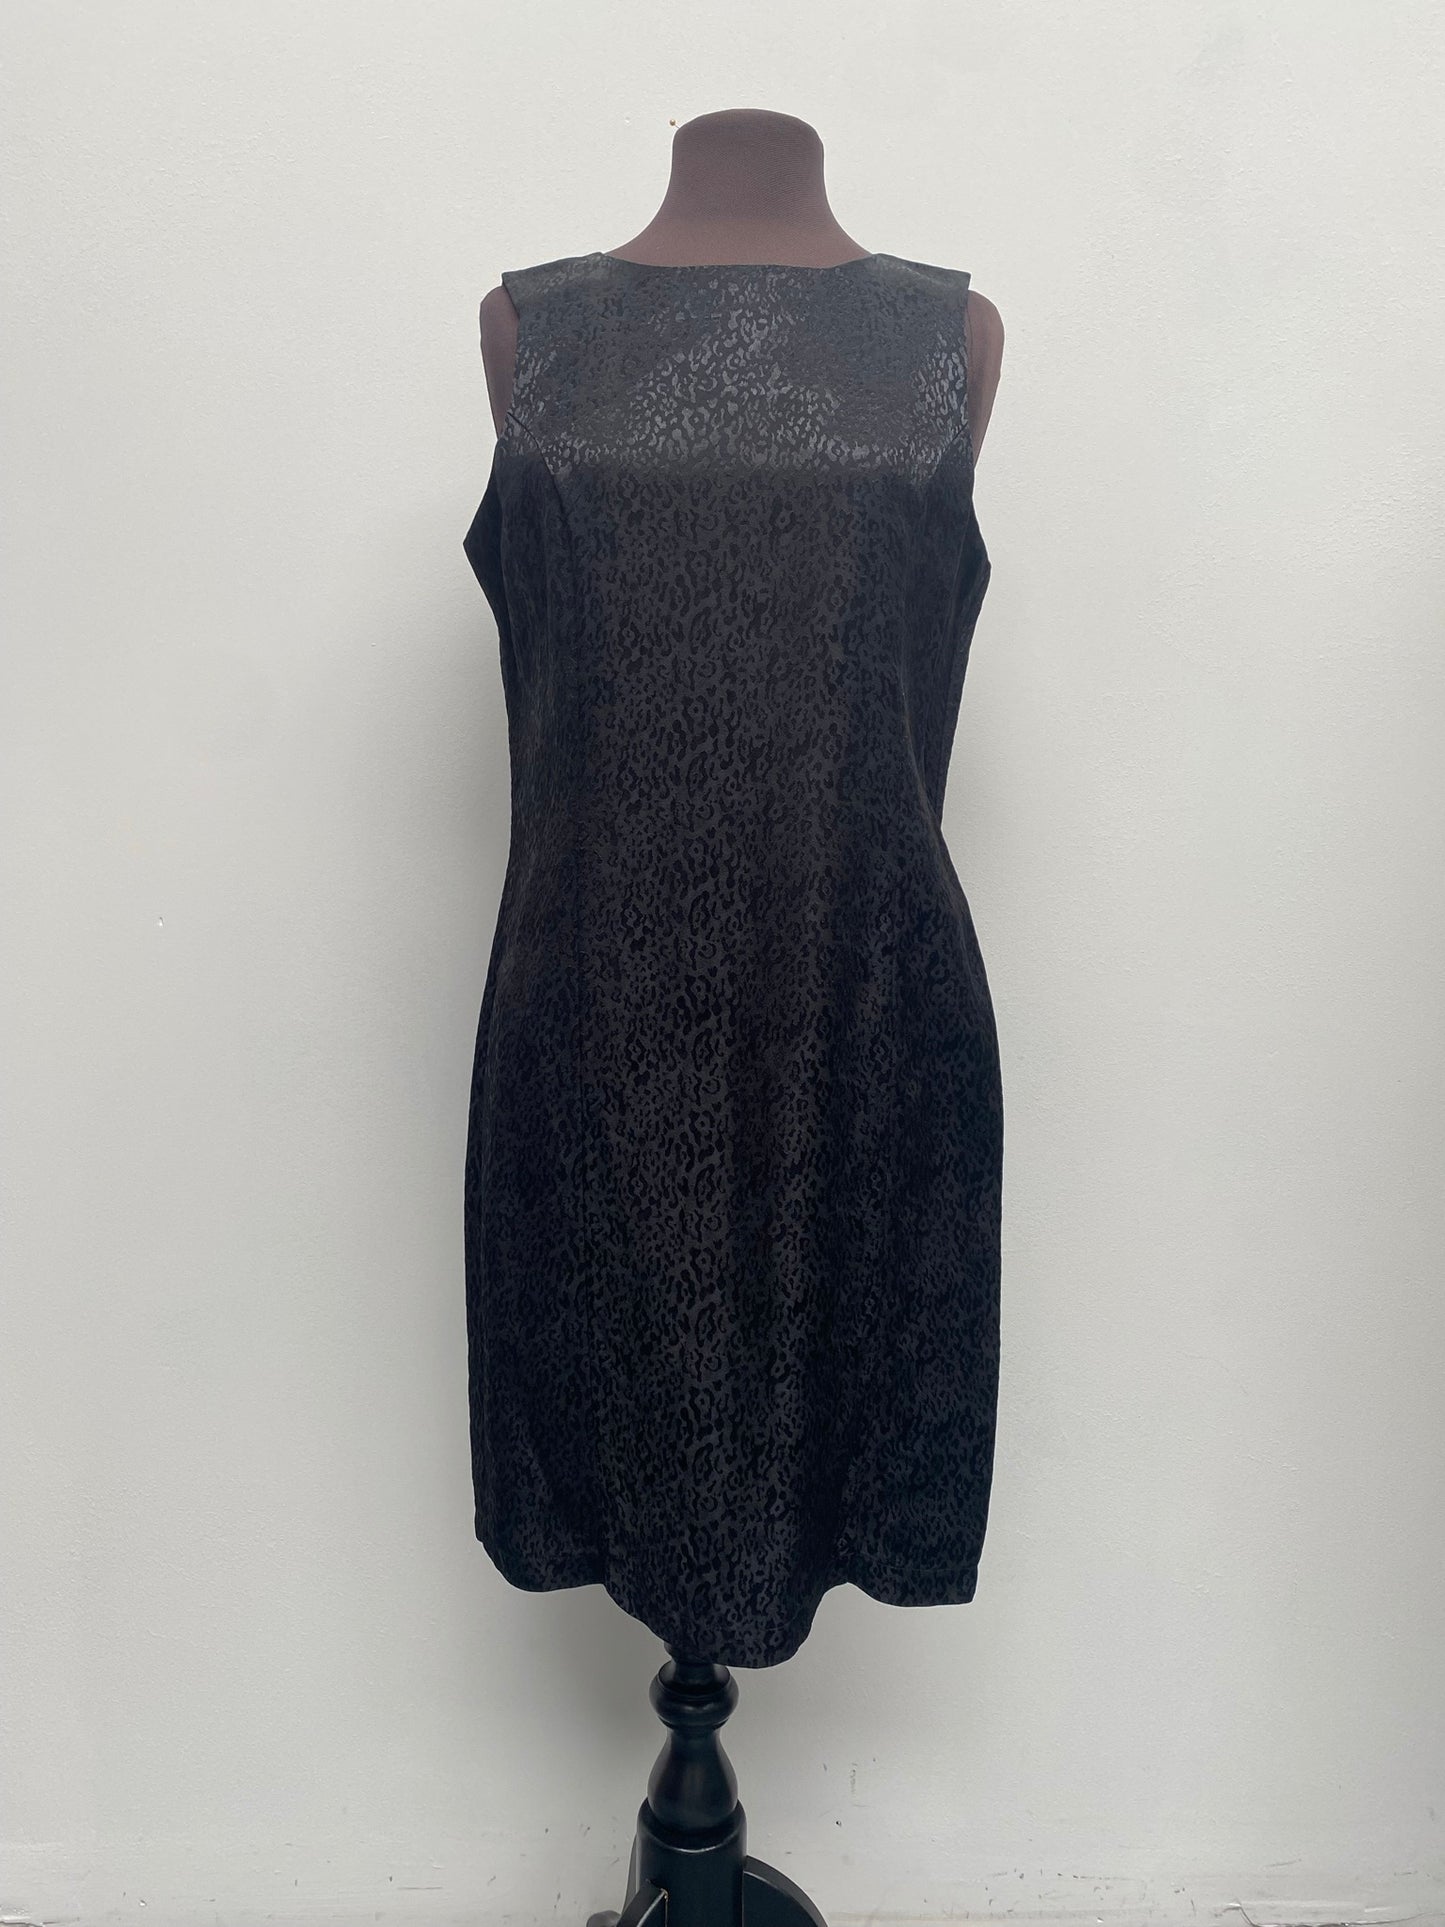 Vintage Black Dress size 14-16